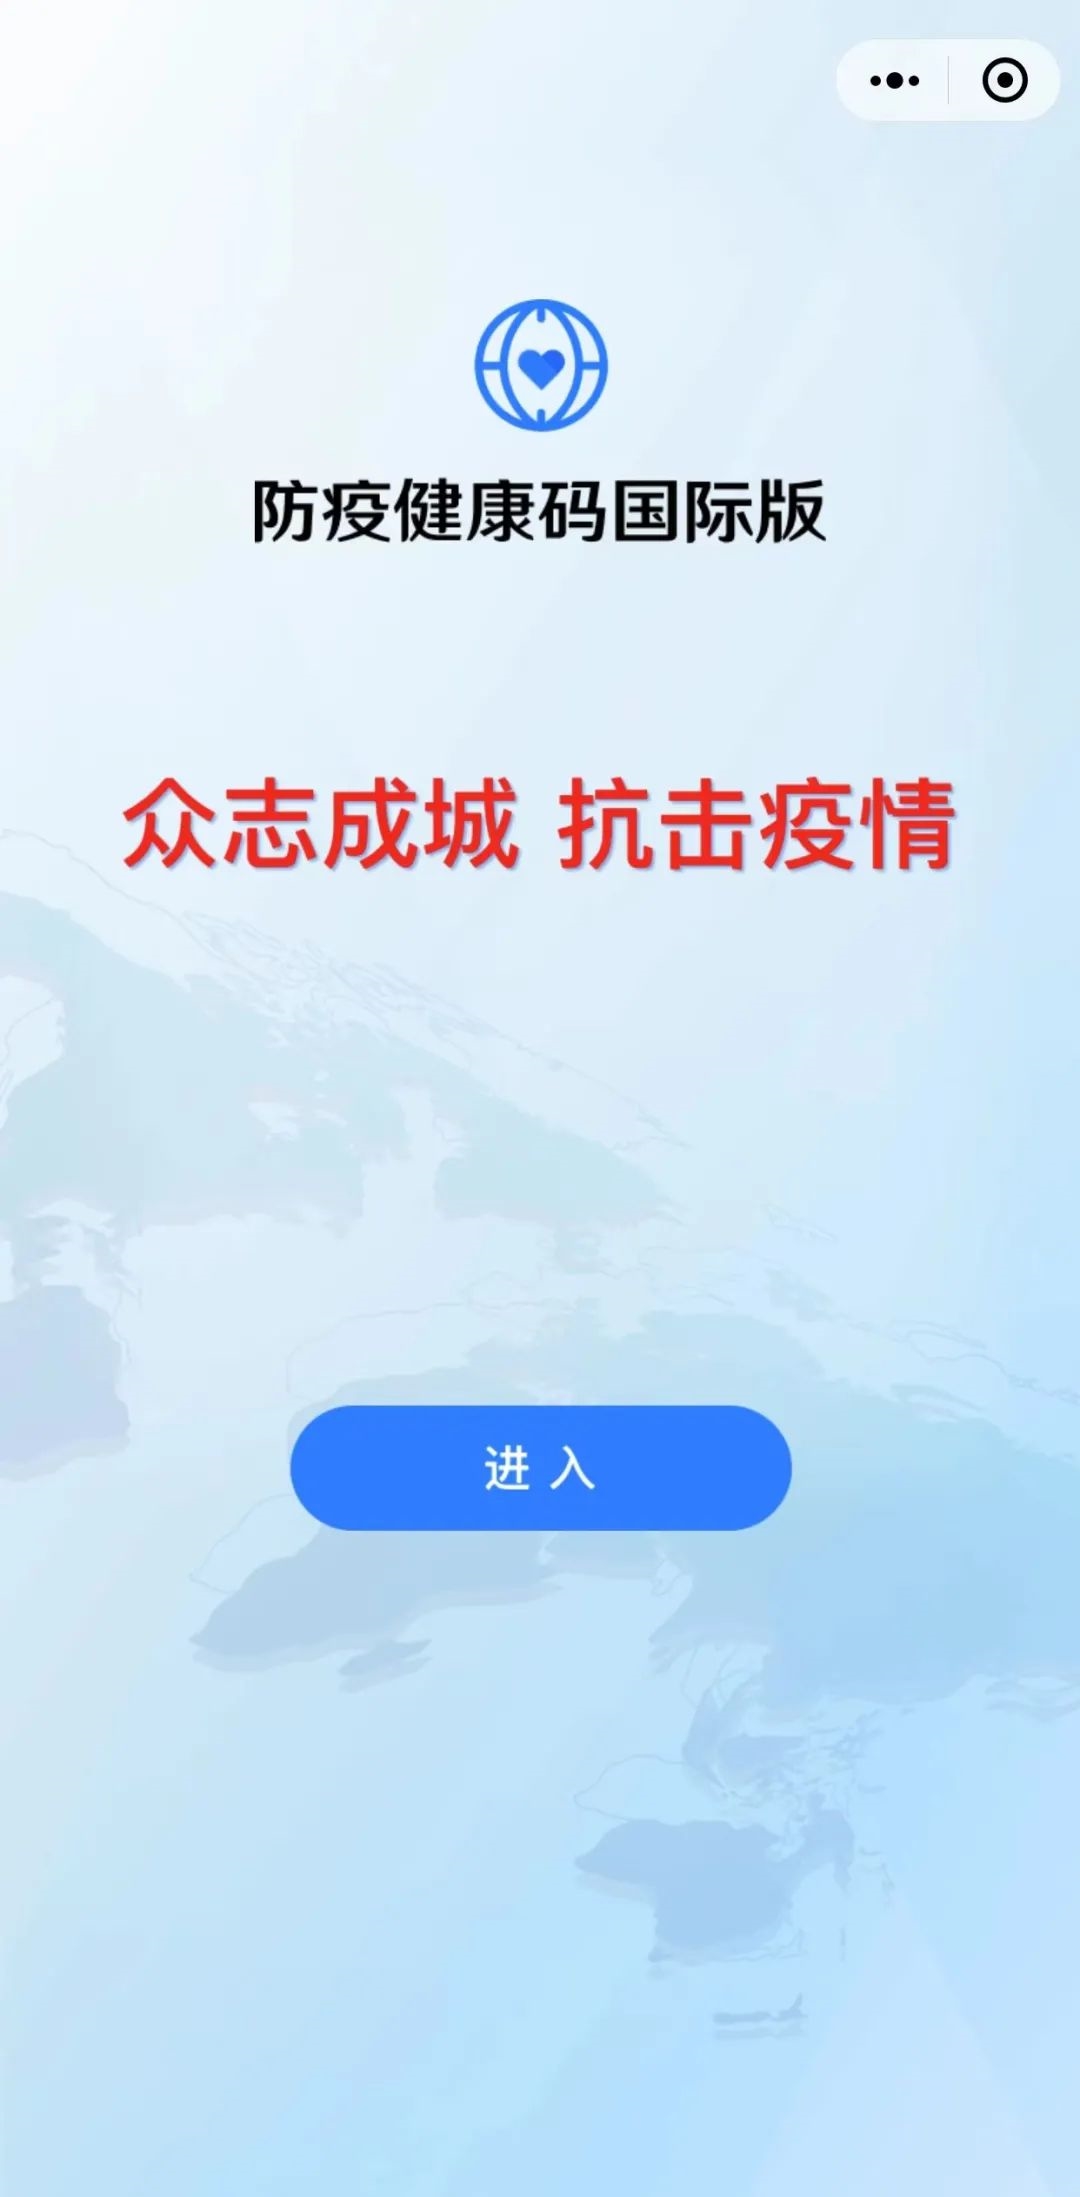 【出国必备】中国国际旅行健康证明免费Get！